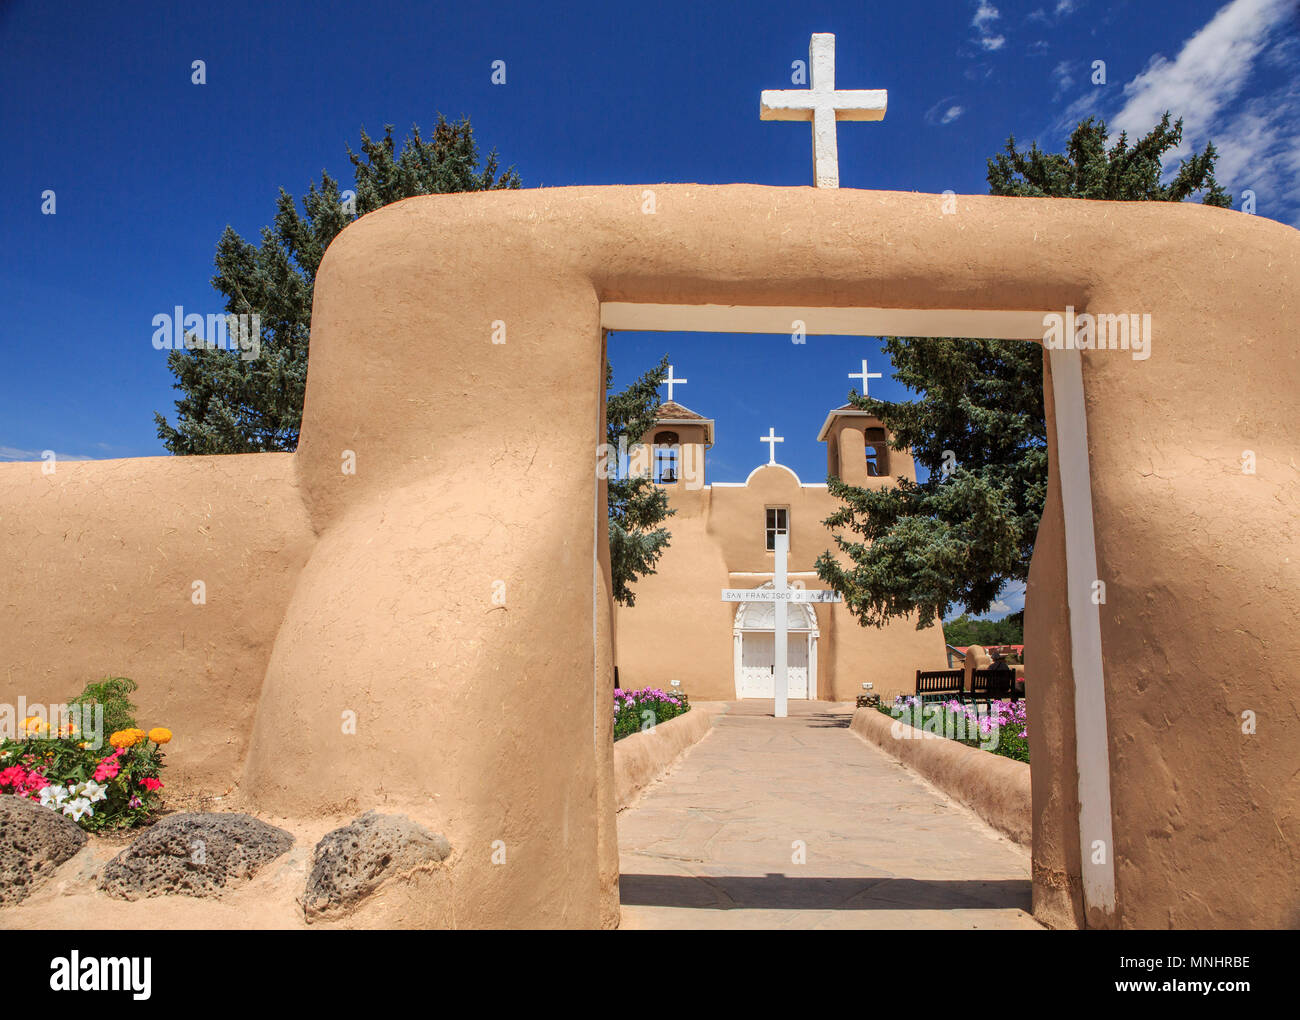 Die Mission San Francisco De Asis Kirche in Taos, New Mexico ist einer der kultigsten Strukturen im Südwesten und wurde von der UNESCO zum Weltkulturerbe und ein US-amerikanisches nationales historisches Denkmal genannt worden. Stockfoto